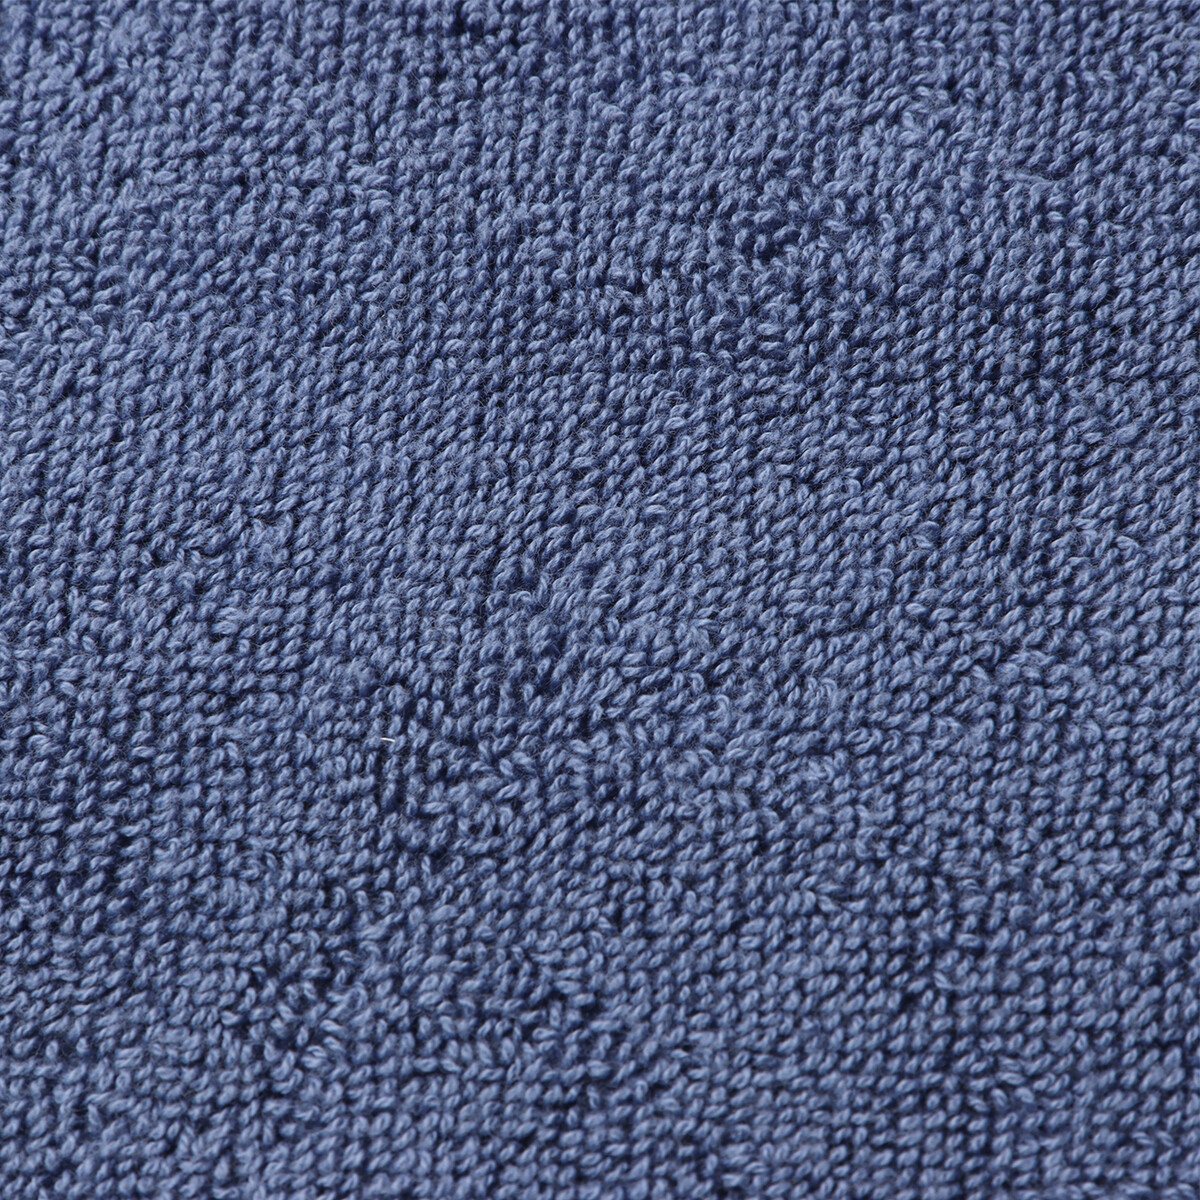 Коврик махровый этель classic, цв. синий, 50х70 см, 100% хлопок, 730 г/м2 Этель 08045149 - фото 2